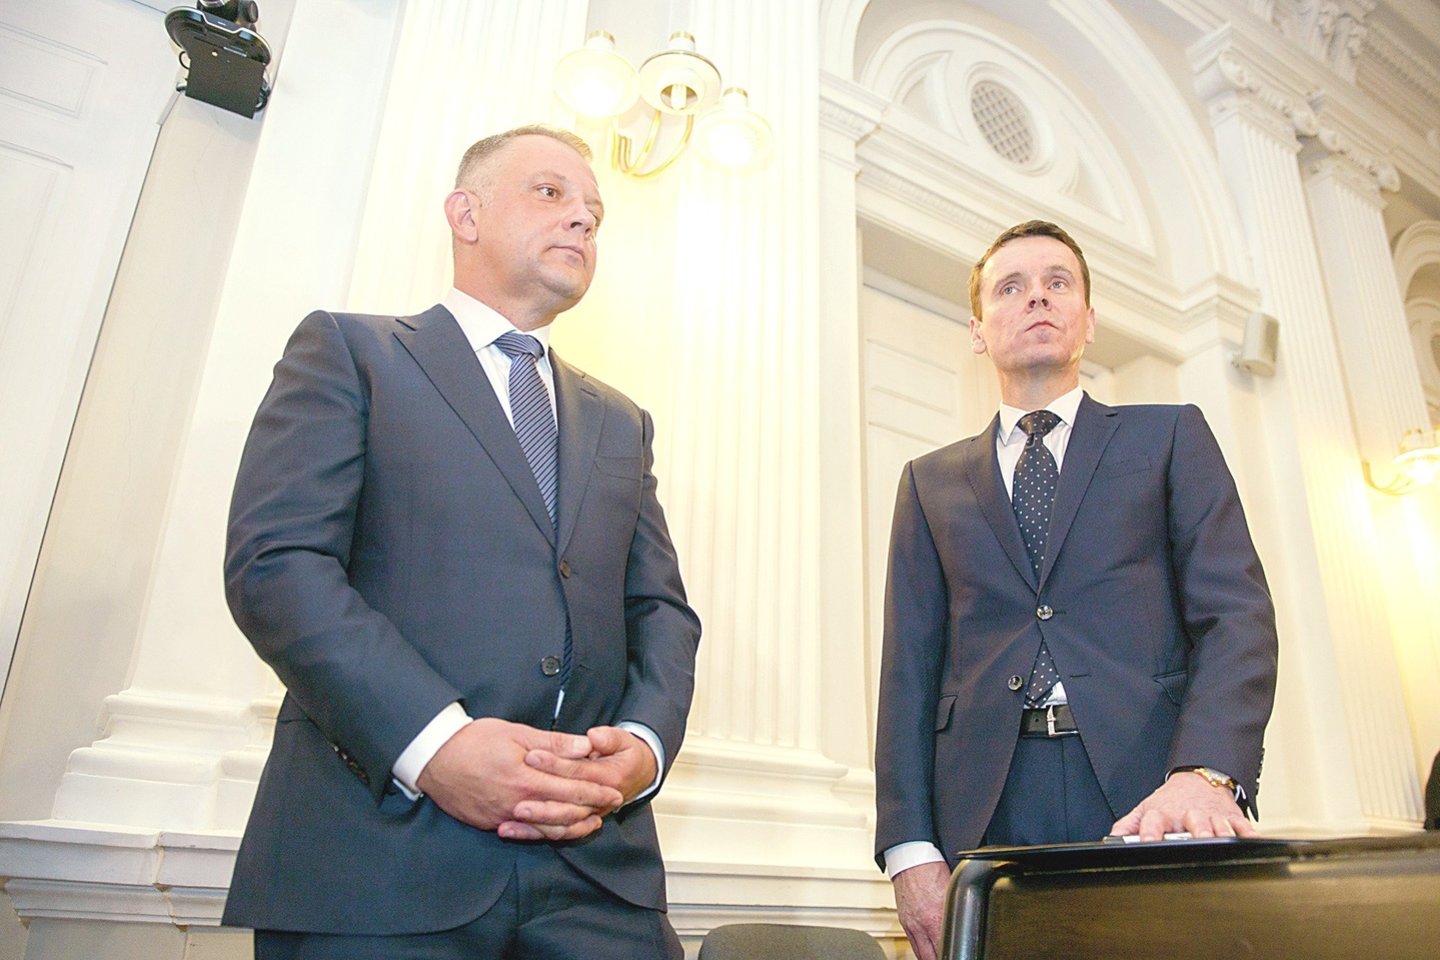 E.Masiulis (kairėje) ir R.Kurlianskis pagrindiniais bylos įtariamaisiais tapo 2016-aisiais, po to keletą metų buvo teisiami. Ir tai – dar ne pabaiga.<br>Nuotr. iš LR archyvo